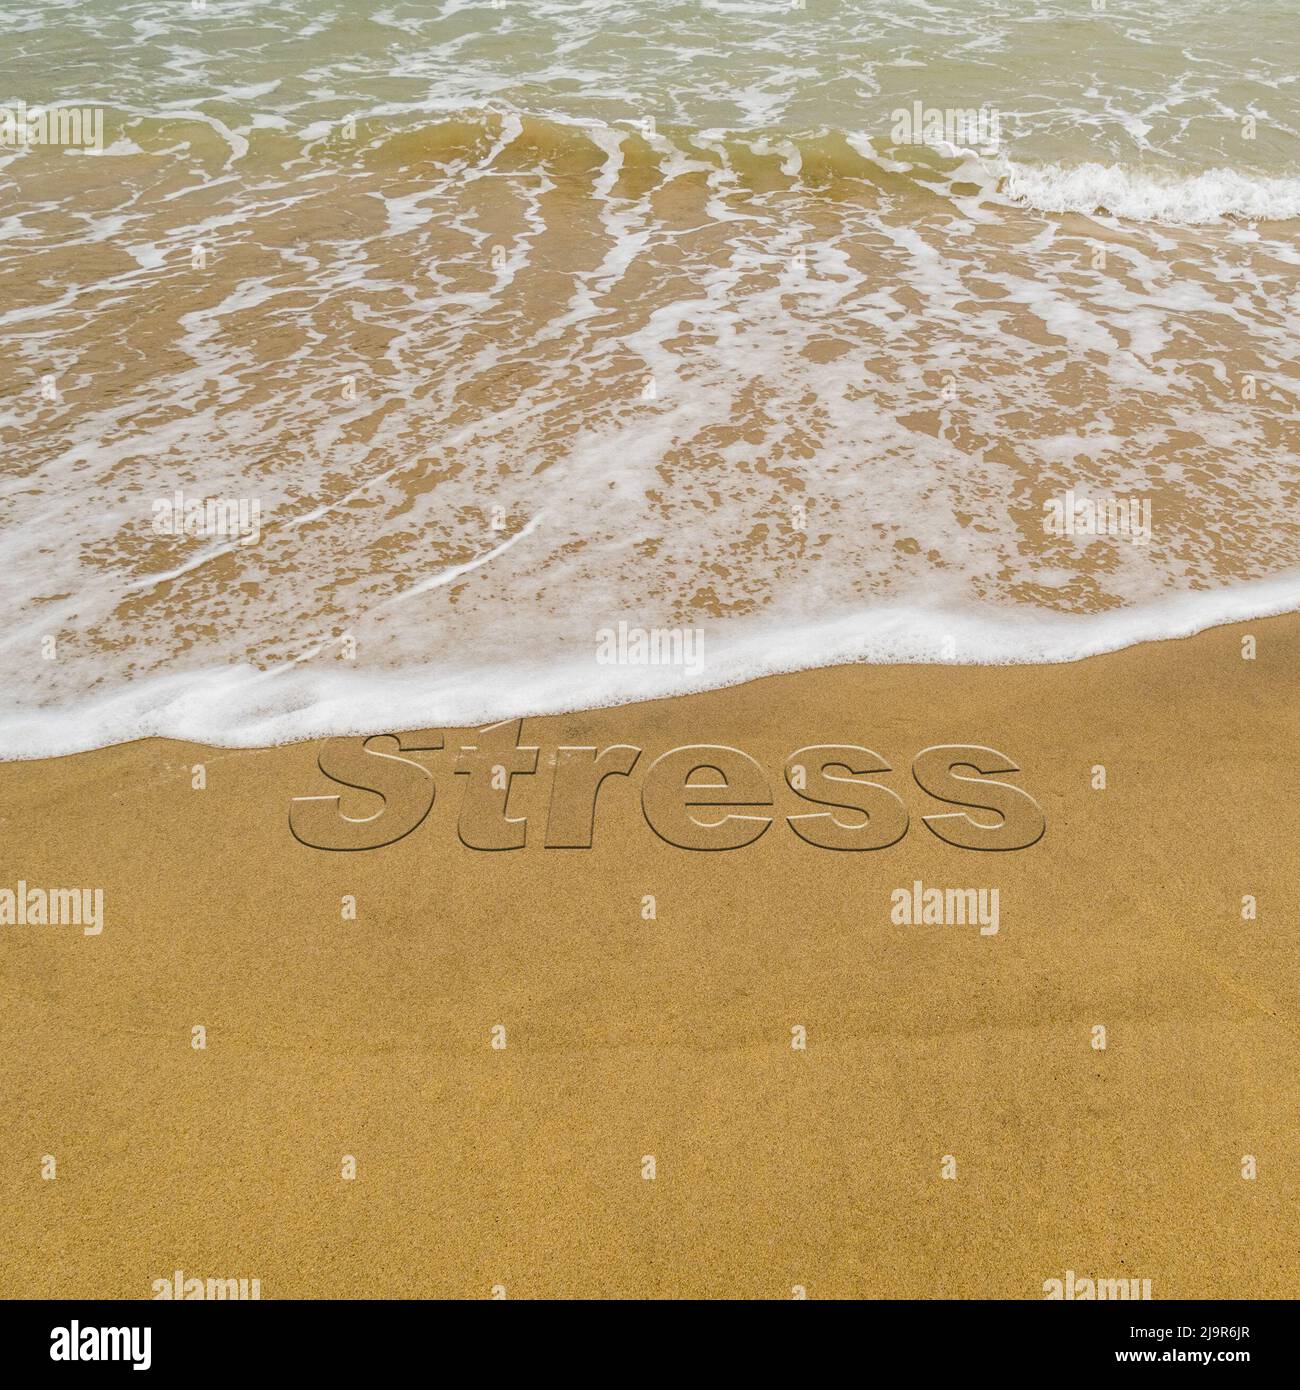 Immagine concettuale - per illustrare il lavaggio via lo stress prendendo una vacanza come onde su una spiaggia sabbiosa lavare via la parola 'stress' scritto in sabbia. Foto Stock